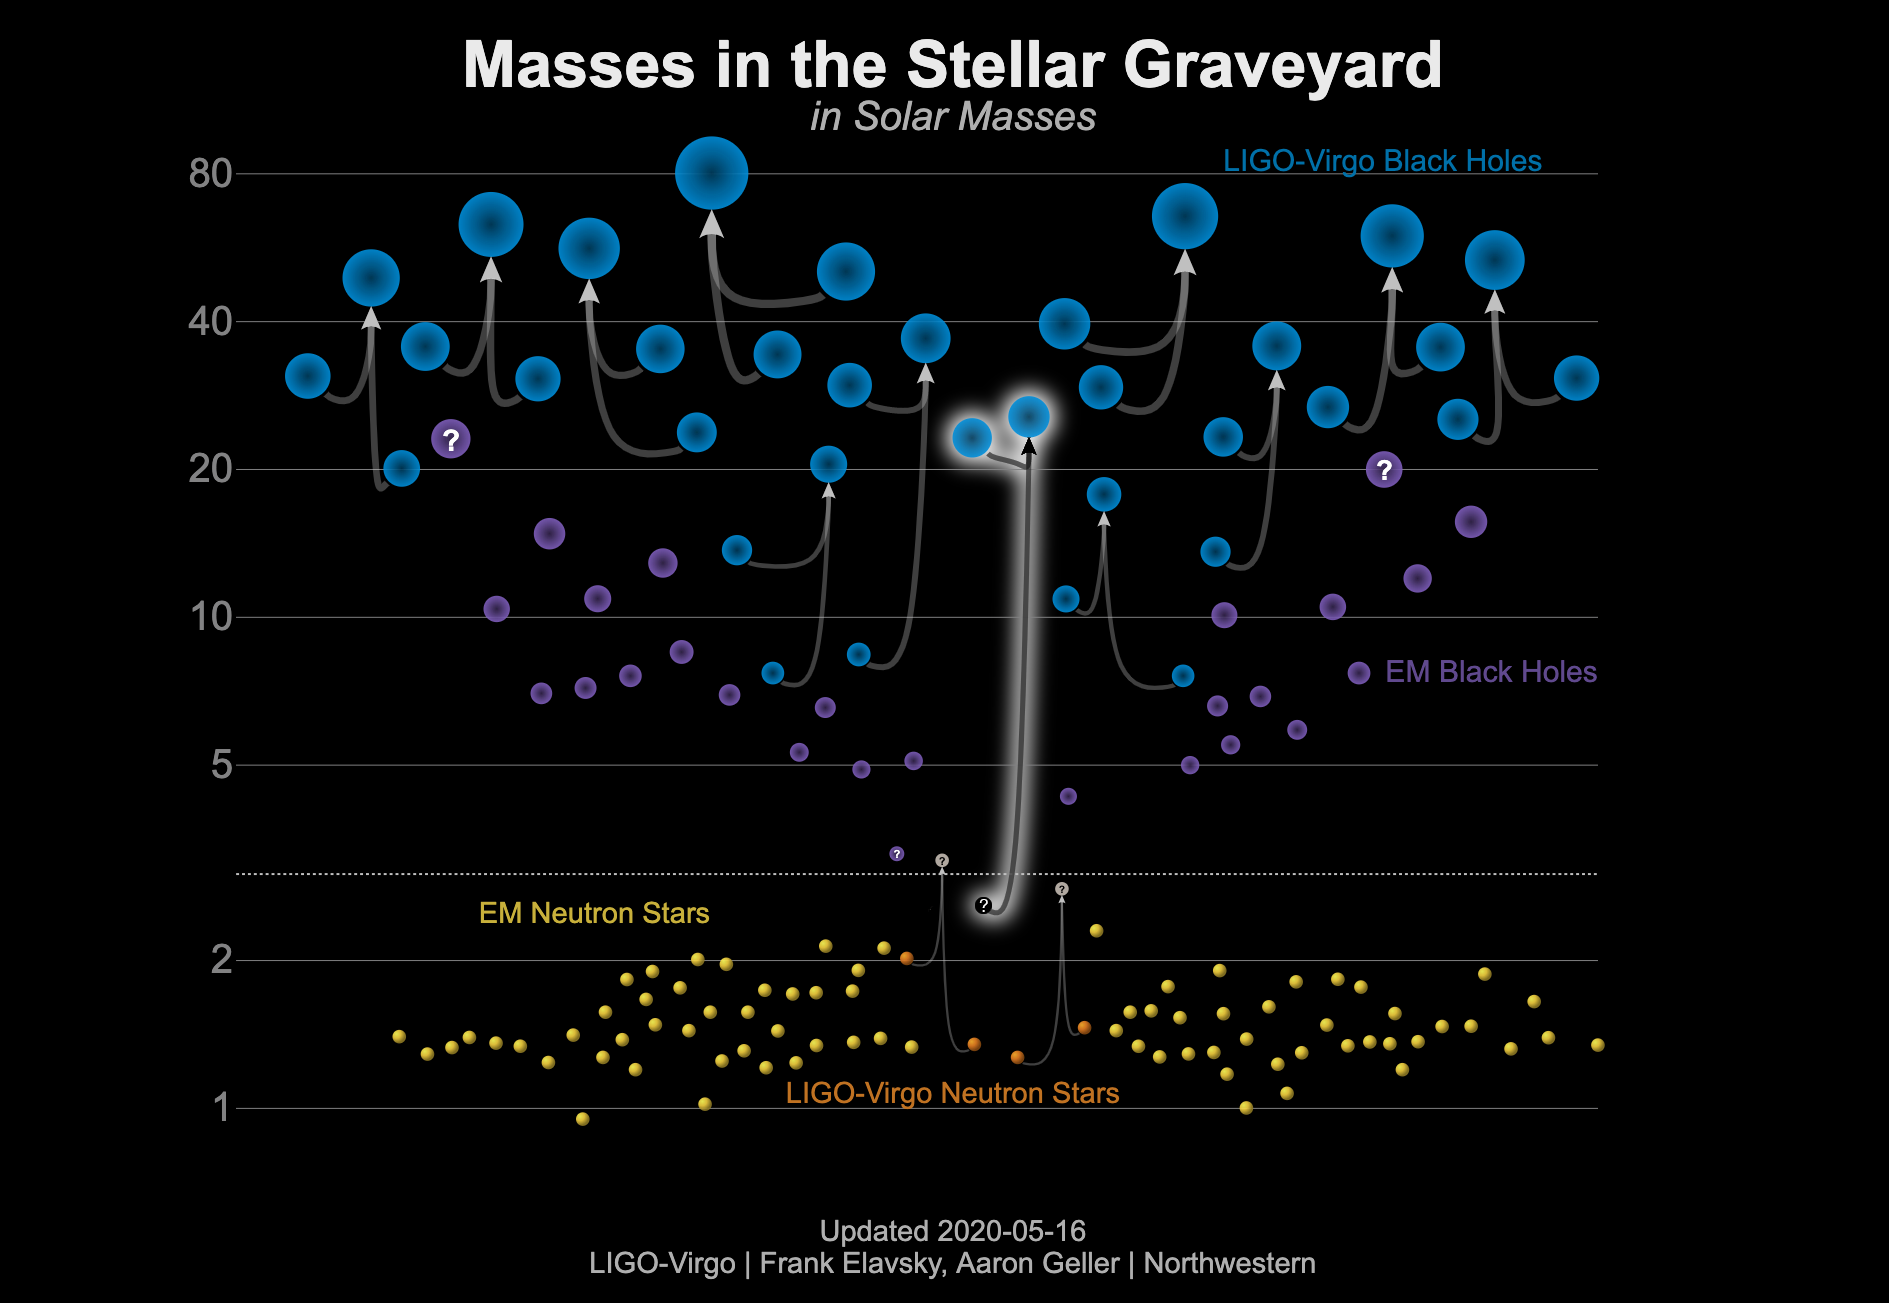 Masy gwiezdnych cmentarzysk (czarne dziury / gwiazdy neutronowe) wyrażone w masach Słońca (1 Mʘ). Grafika zaktualizowana na dzień 16 maja 2020 r., przedstawia masy czarnych dziur wyznaczone dzięki obserwacjom promieniowania elektromagnetycznego (purpurowe) i fal grawitacyjnych (niebieskie), jak również masy gwiazd neutronowych wyznaczone dzięki obserwacjom promieniowania elektromagnetycznego (żółte) i fal grawitacyjnych (pomarańczowe). GW190814 jest podświetlony w centrum rysunku jako koalescencja czarnej dziury i tajemniczego obiektu (gwiazda neutronowa lub czarna dziura ?) o masie ~2,6 Mʘ. Źródło: LIGO-Virgo/Northwestern U./Frank Elavsky & Aaron Geller.